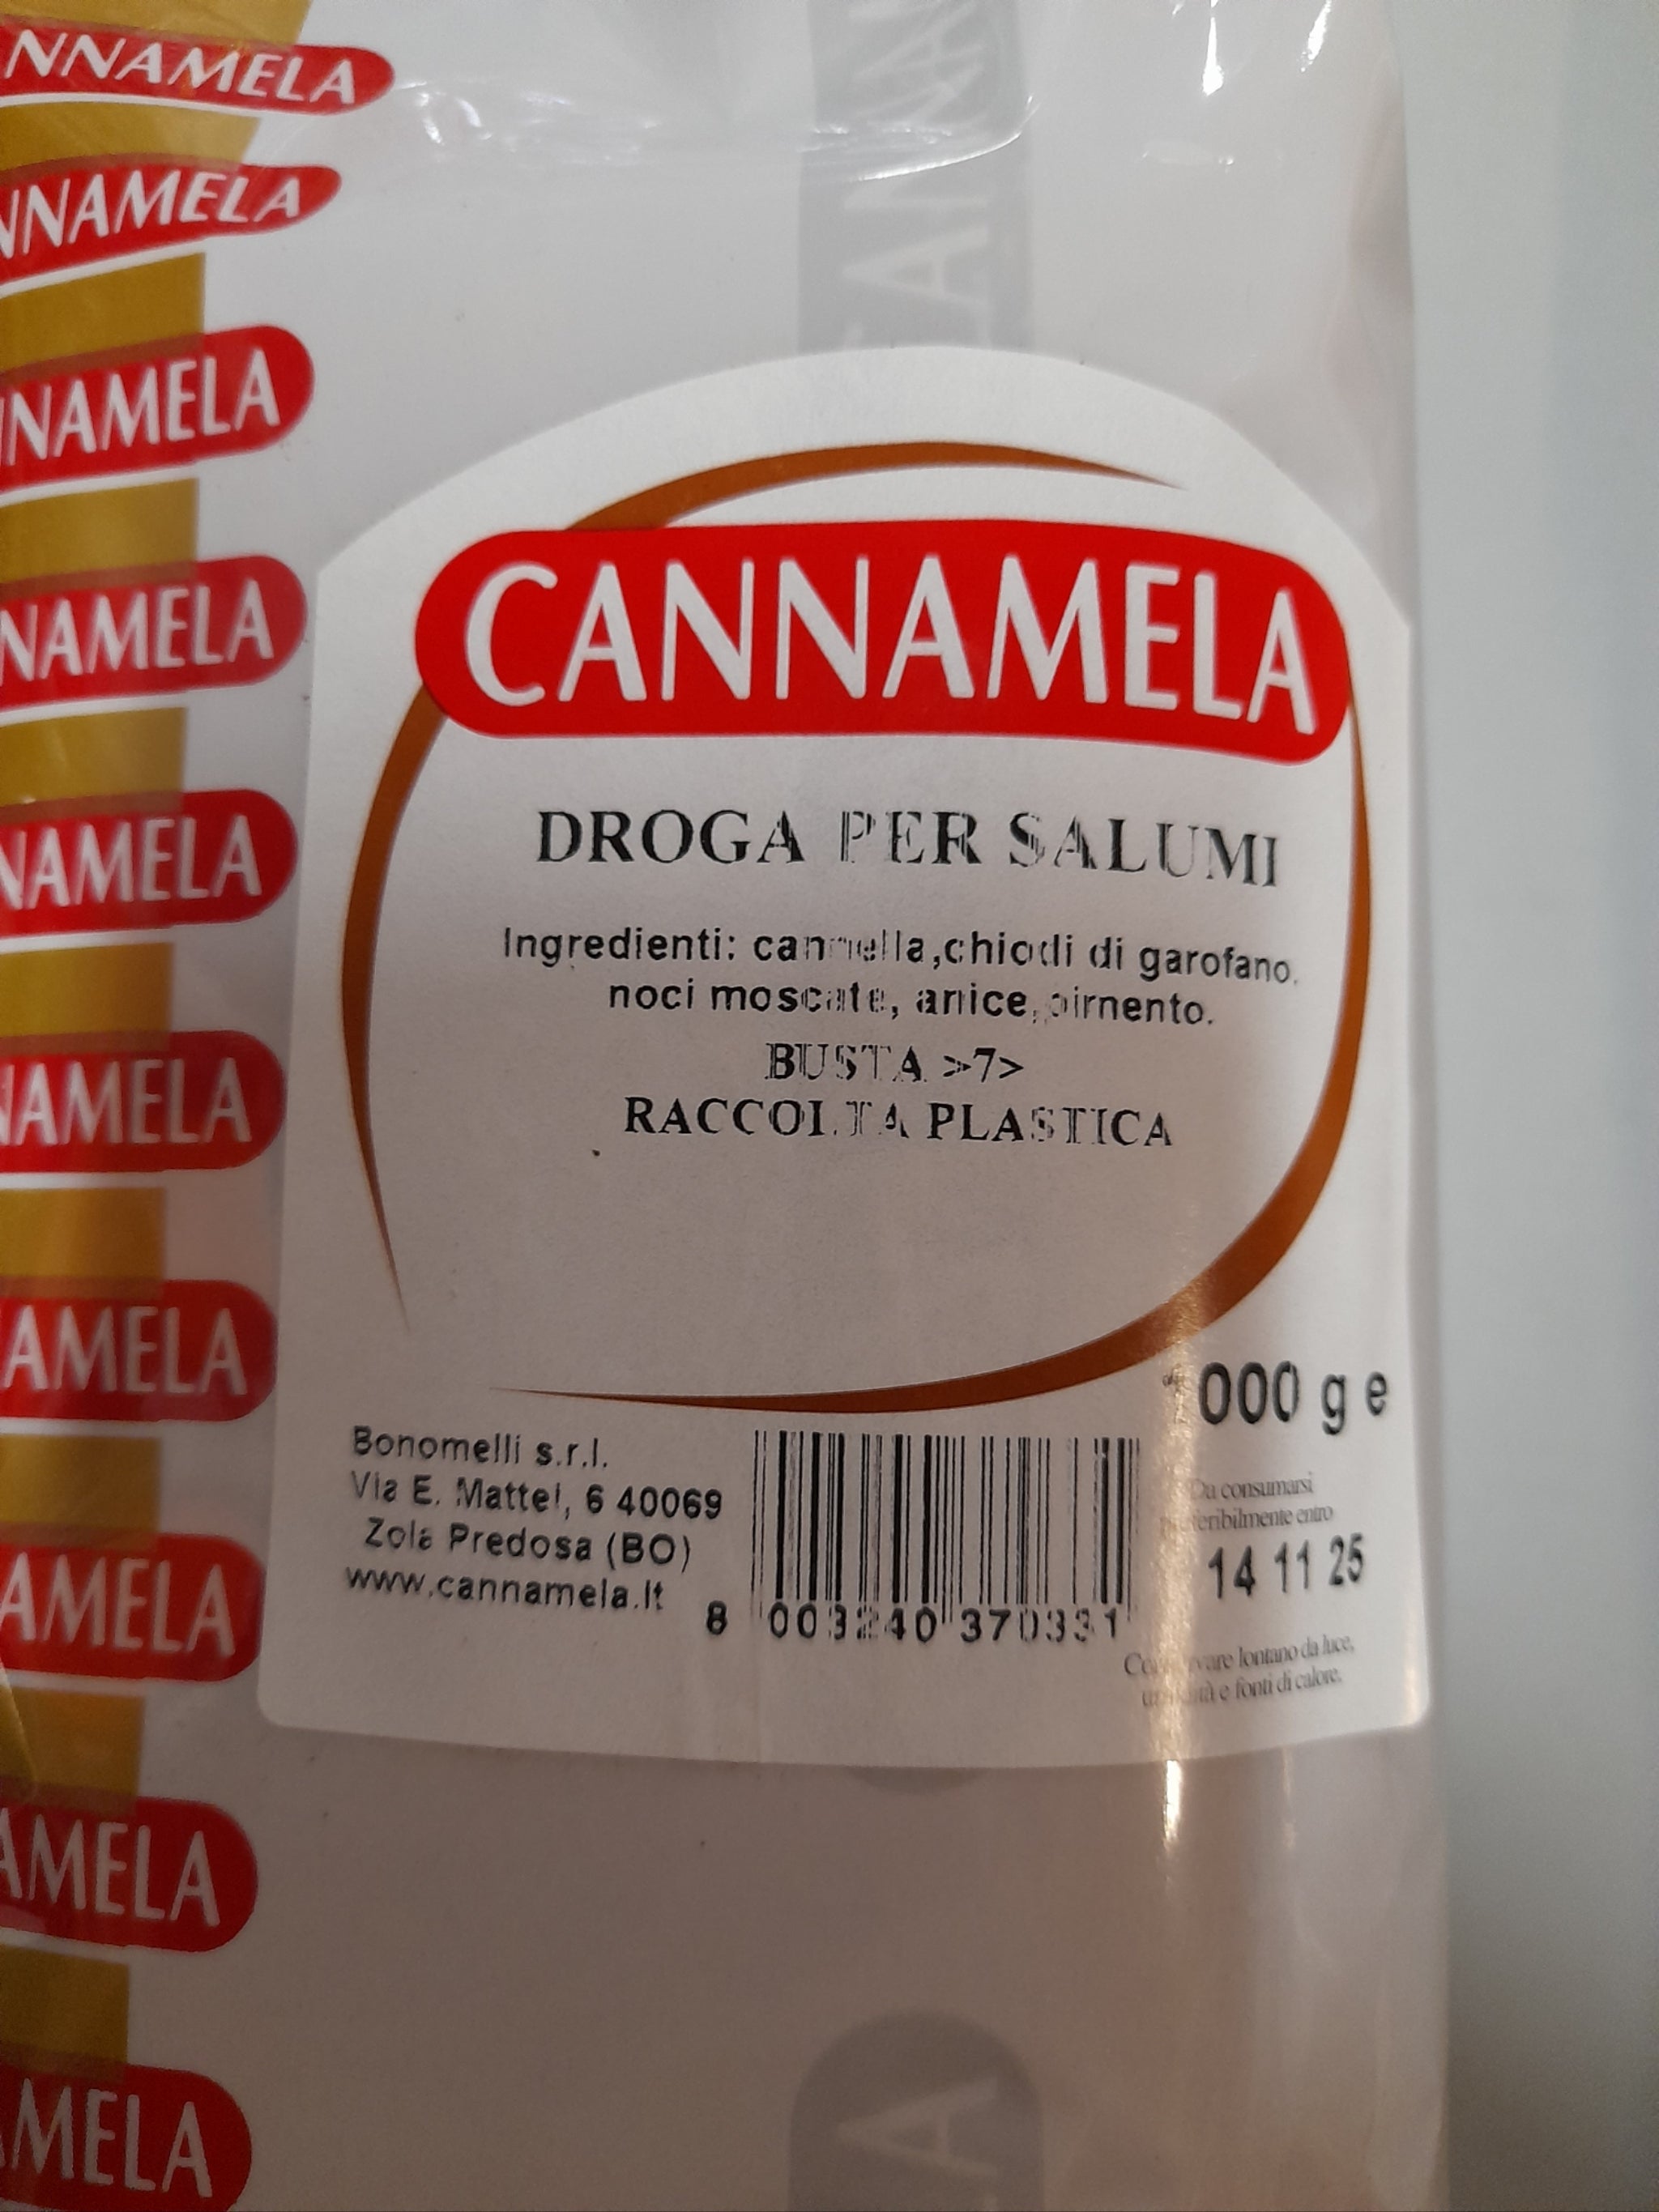 DROGA PER SALUMI 1000g CANNAMELA